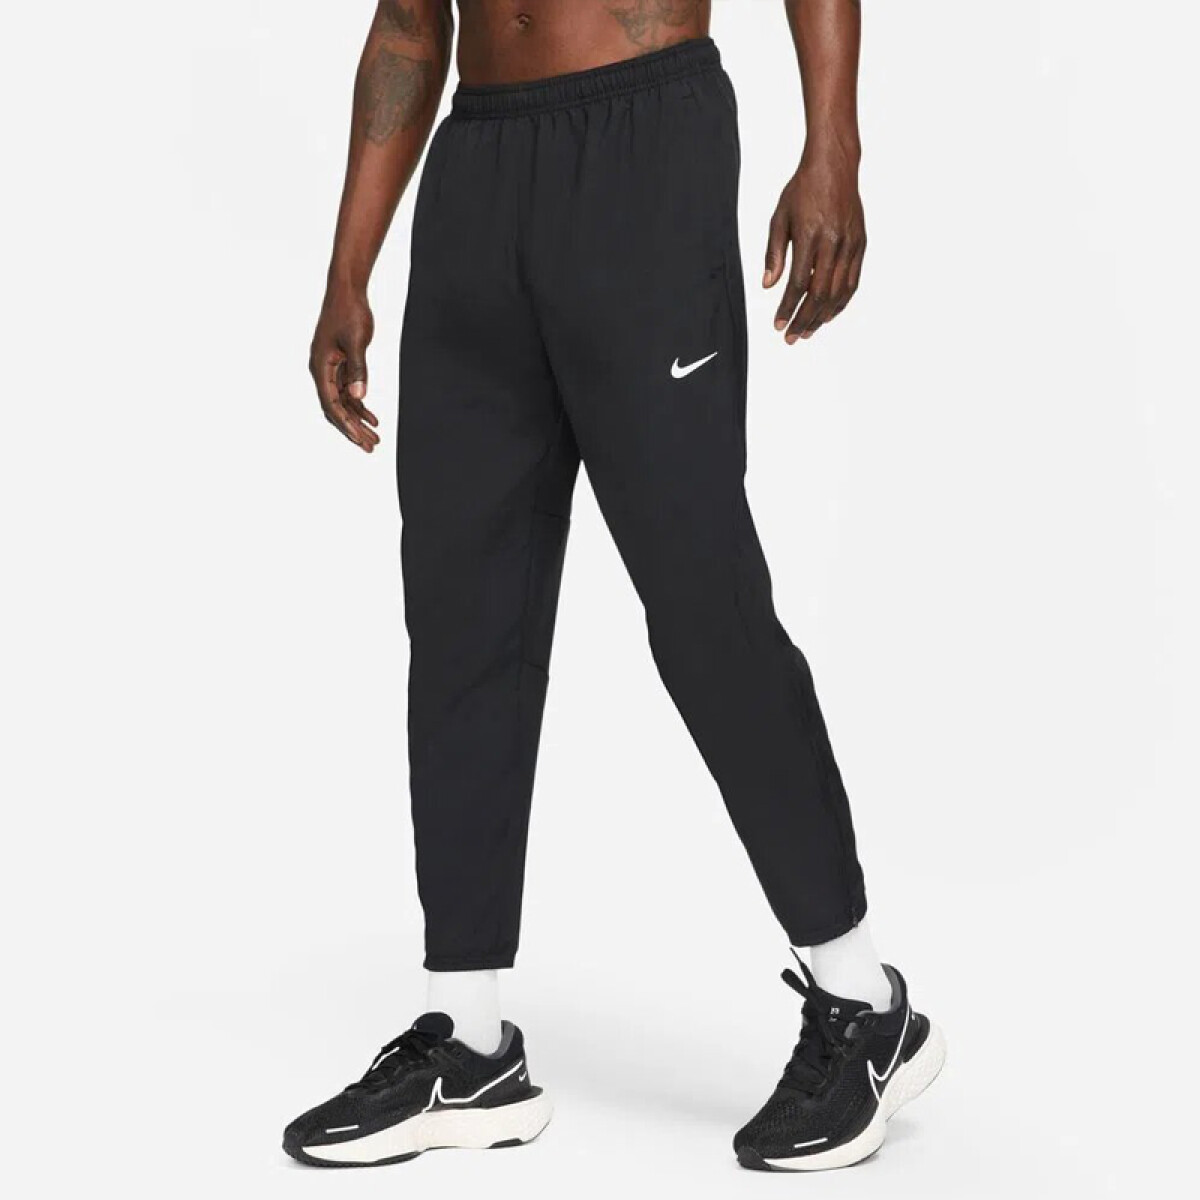 Pantalon Nike Dri-fit Challenger 